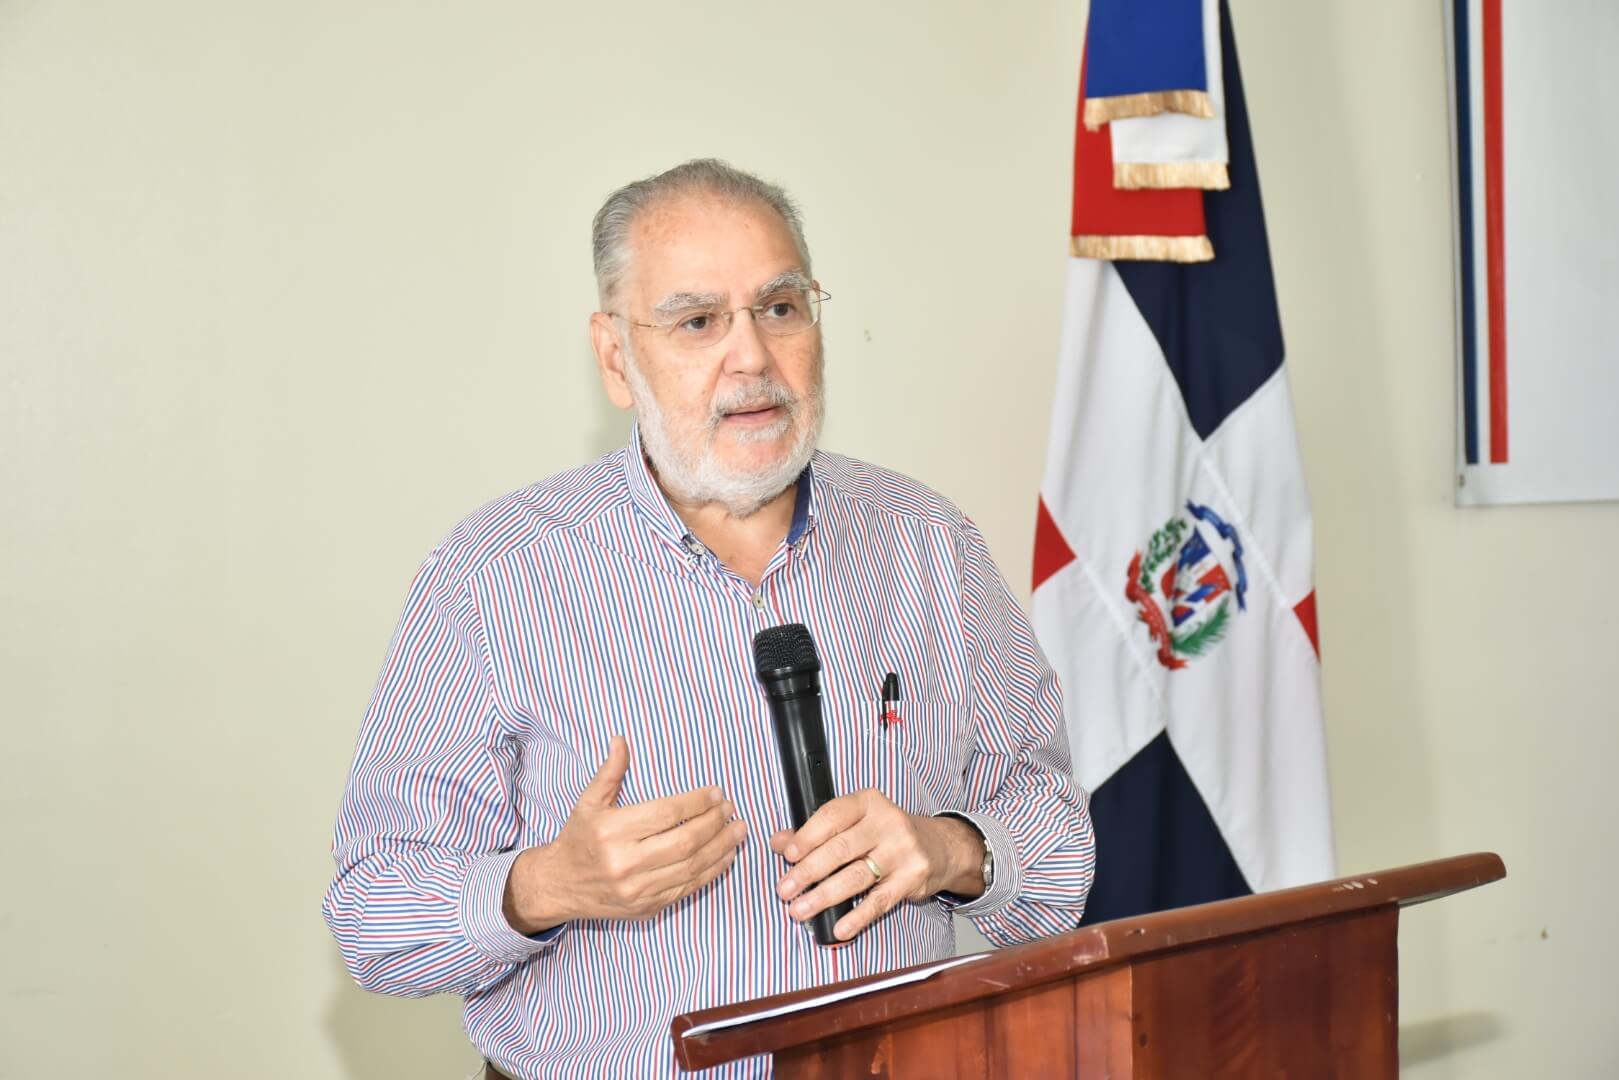 El ministro de Economía, Planificación y Desarrollo, Miguel Ceara Hatton, pronuncia las palabras de introducción de la consulta en la Gobernación provincial de María Trinidad Sánchez, ubicada en Nagua.